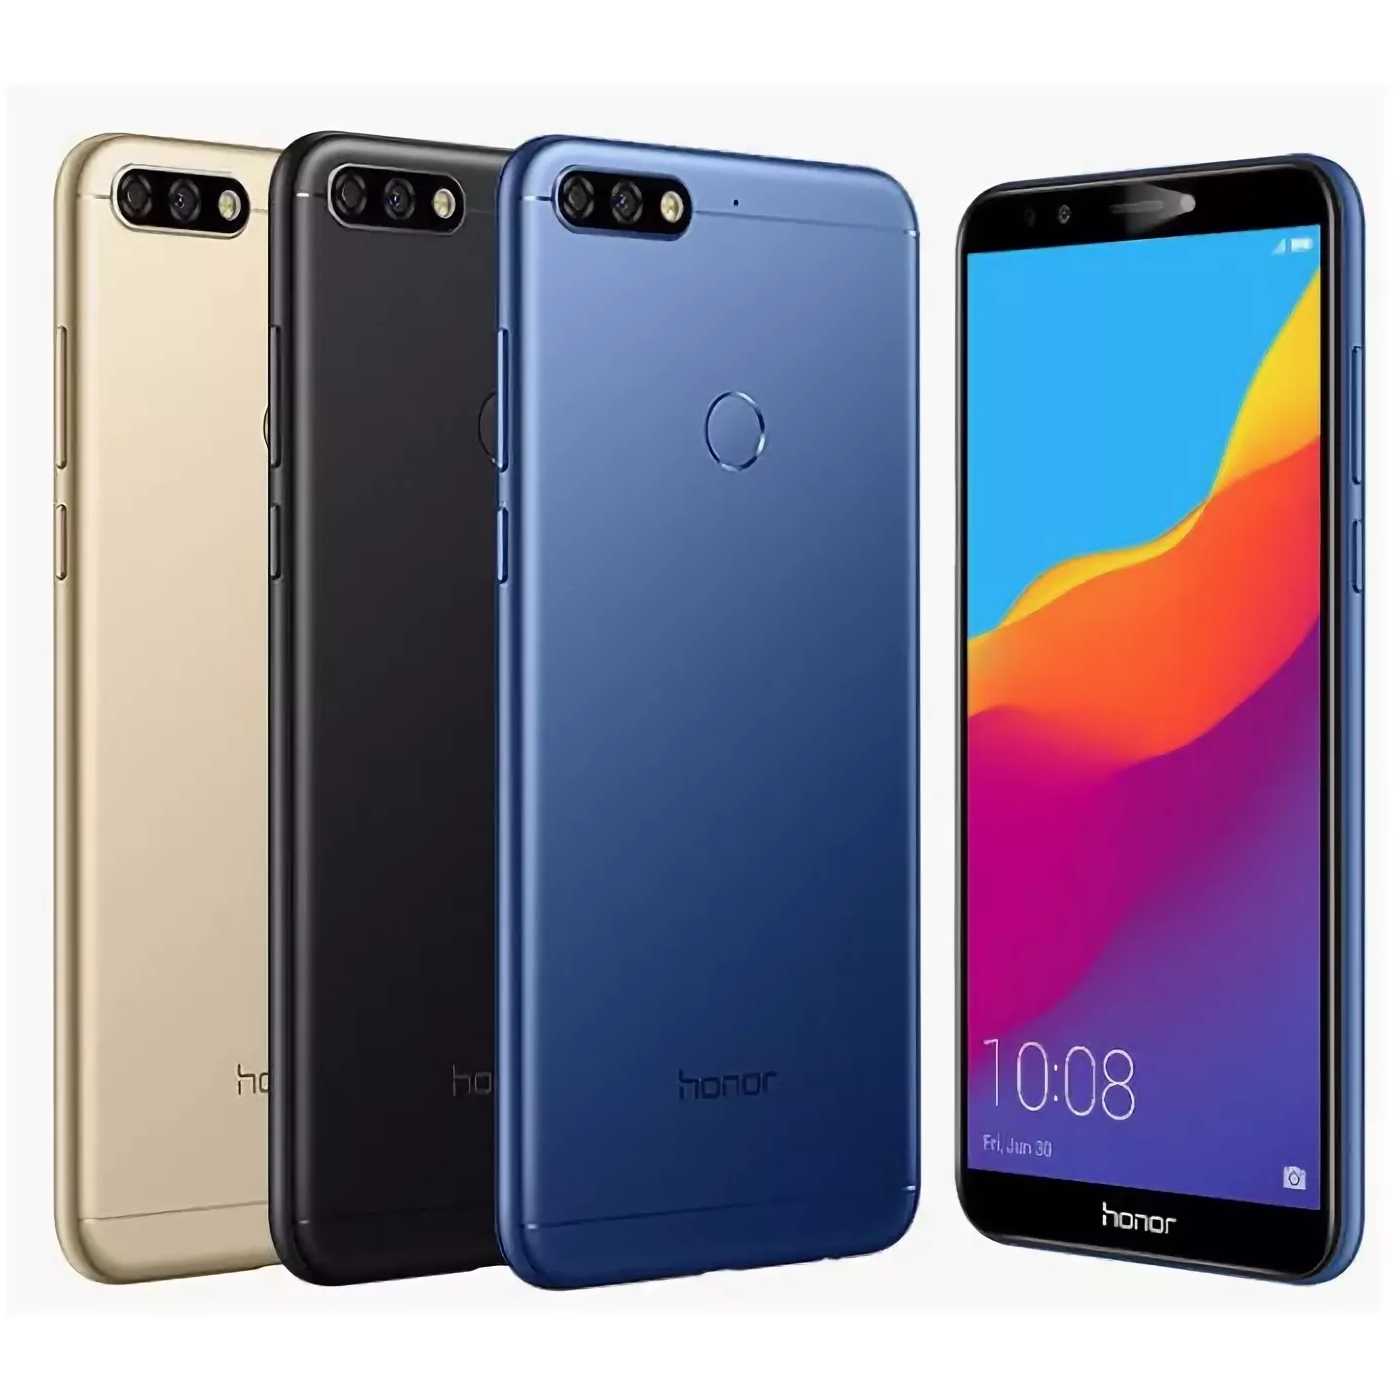 Huawei 3 32. Смартфон Huawei Honor 7a. Huawei Honor 7c Pro. Хуавей хонор 7. Смартфон Honor 7c 32gb.